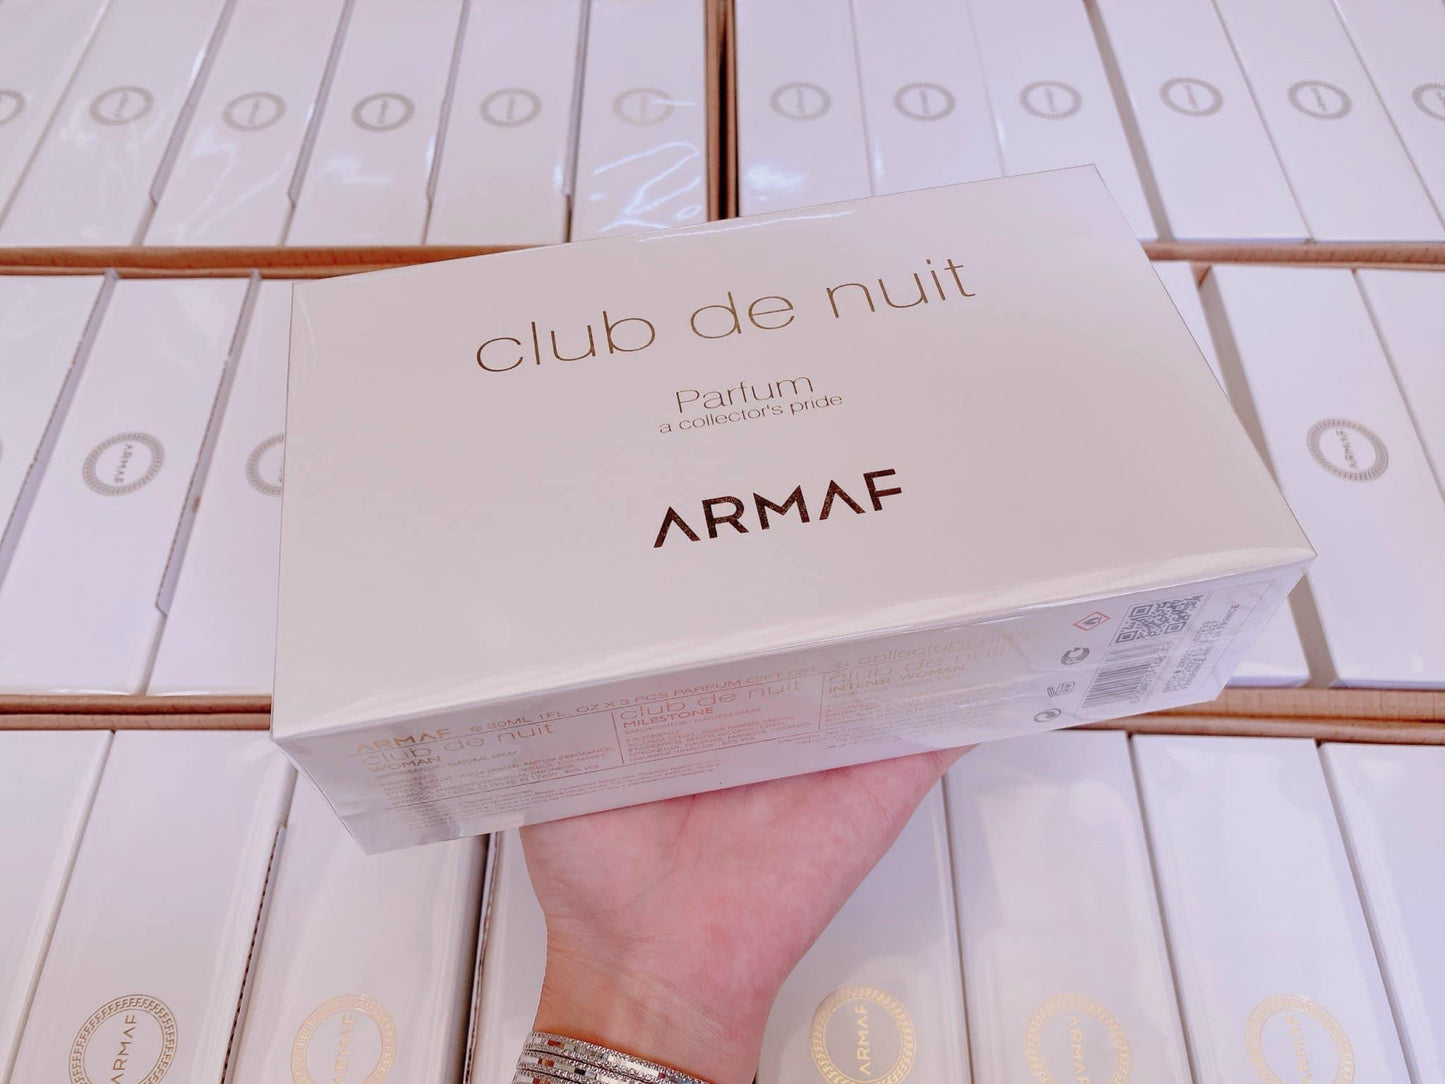 Club de nuit  Armaf (set 3 chai)